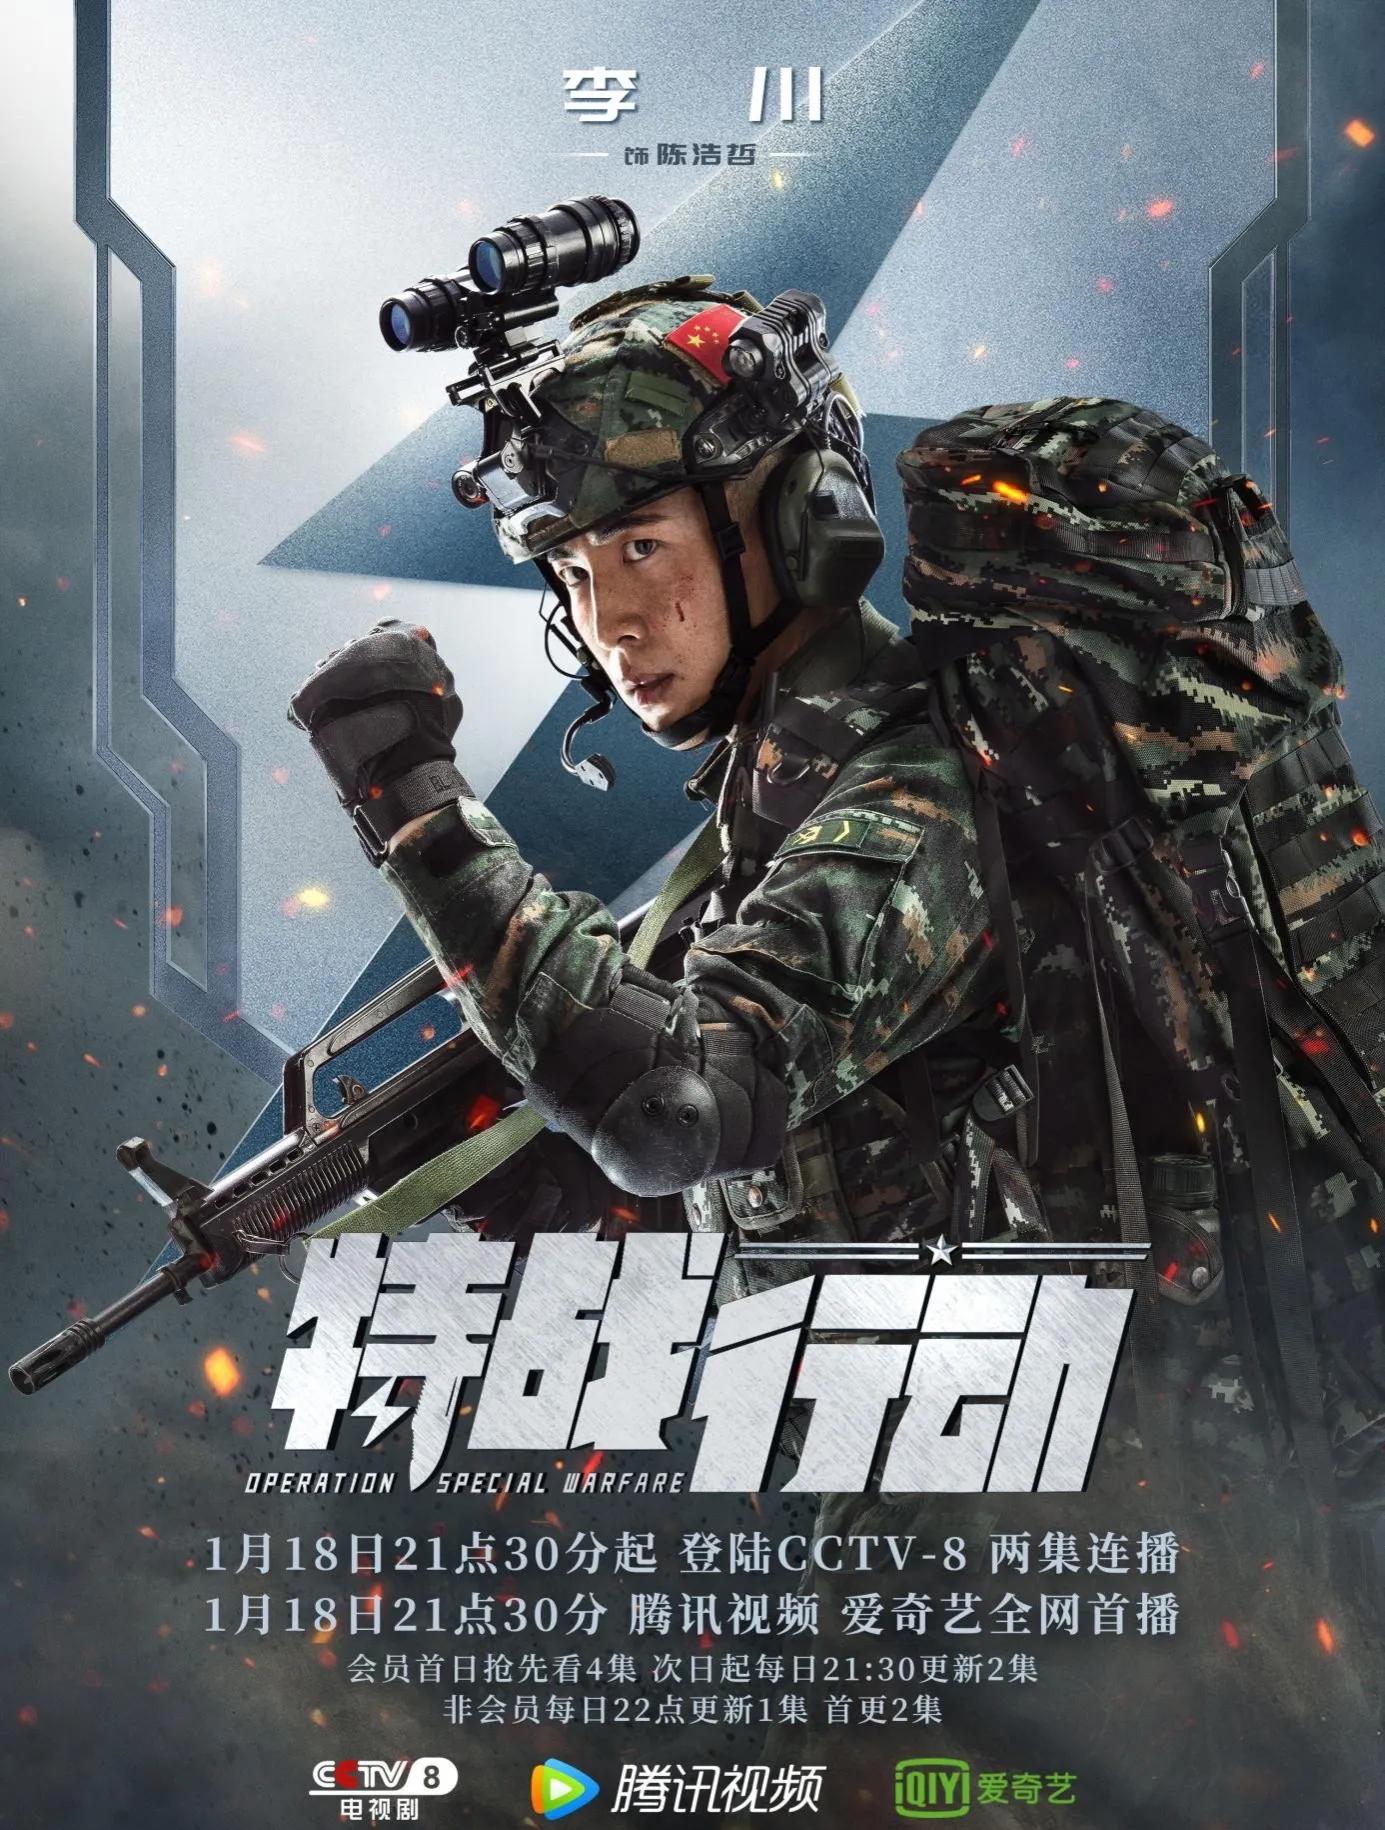 CCTV今天开始了广播，高炜光胡炳庆已经迎来了人类，军事苛刻的戏剧“特别战争行为”来了